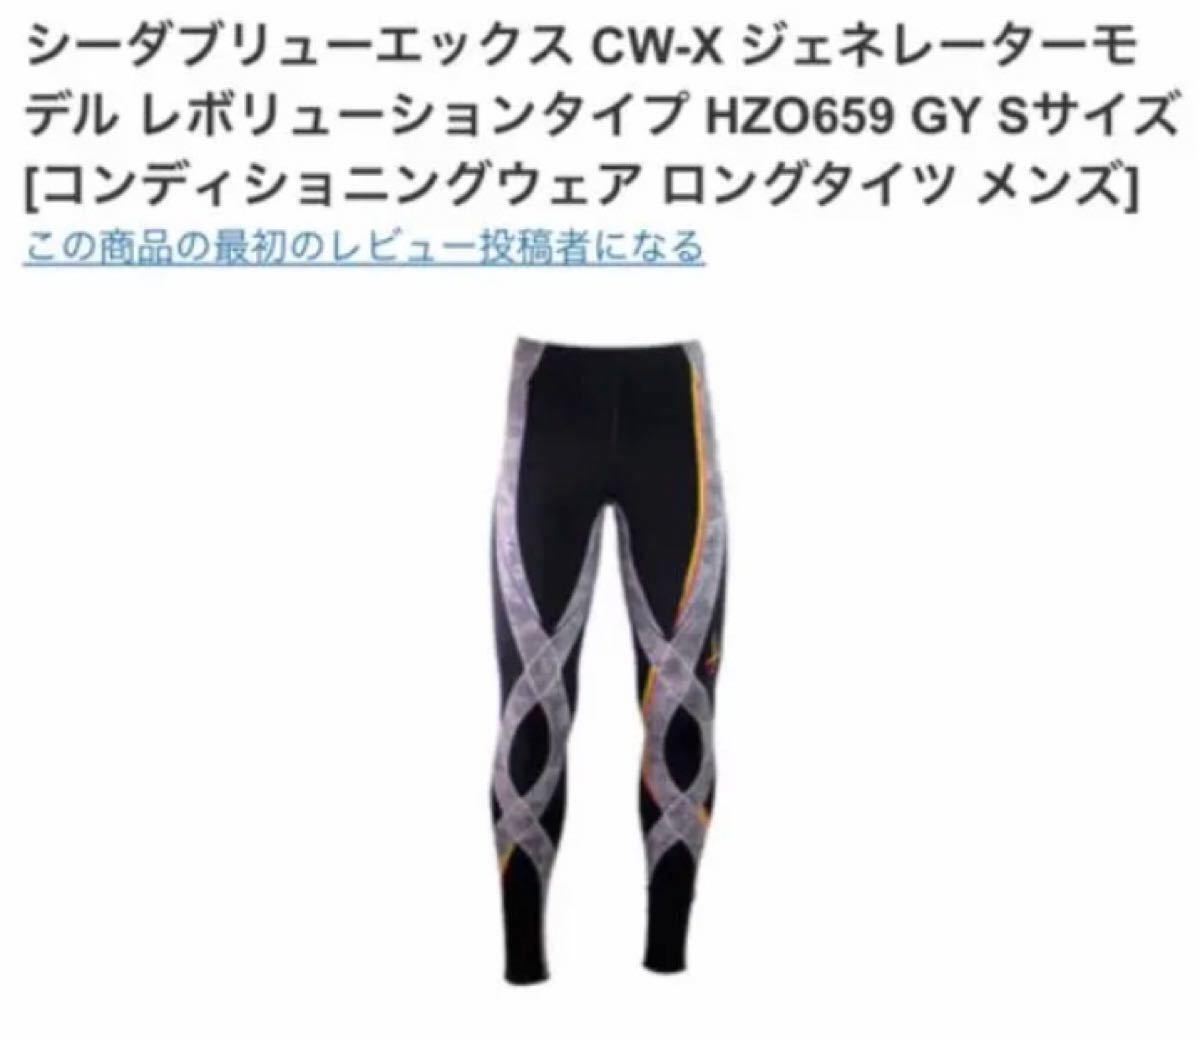 CW-X ワコールCW-X ジェネレーター レボリューション メンズ サイズS 新品 スポーツタイツ